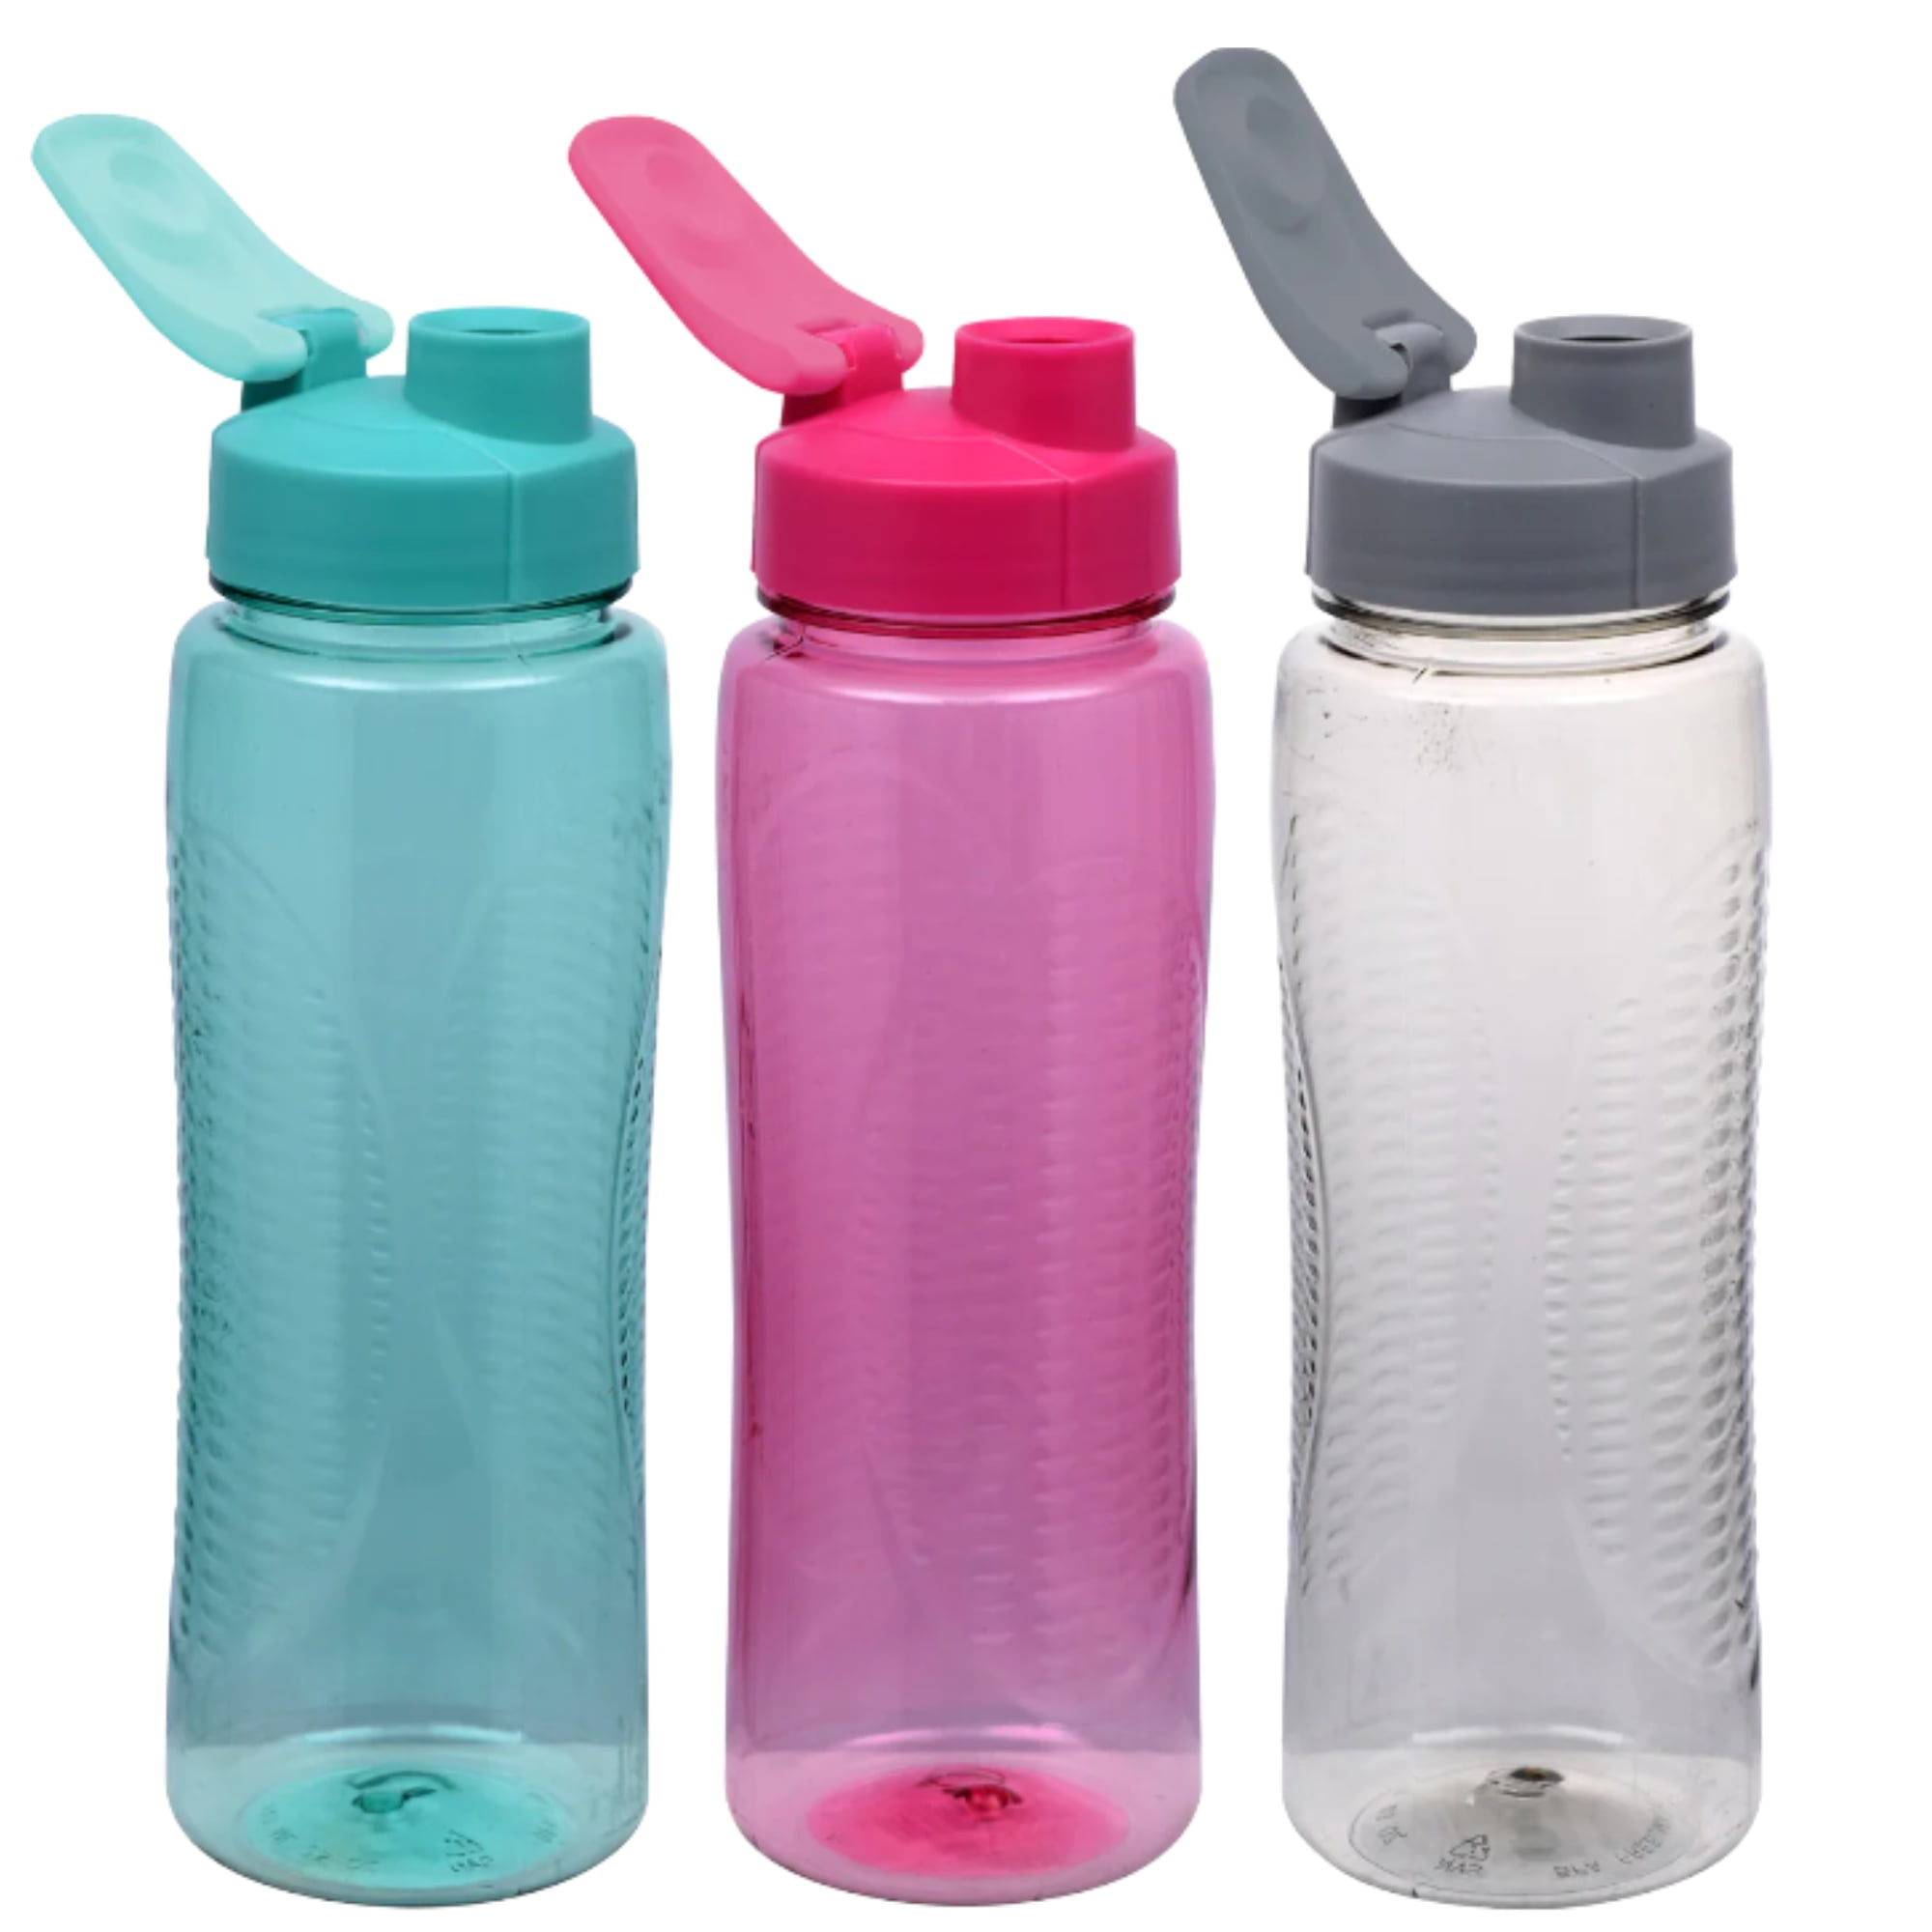 24 Pcs Water Bottles for Kids 17 oz Plastic Water Bottles Bulk Reusable